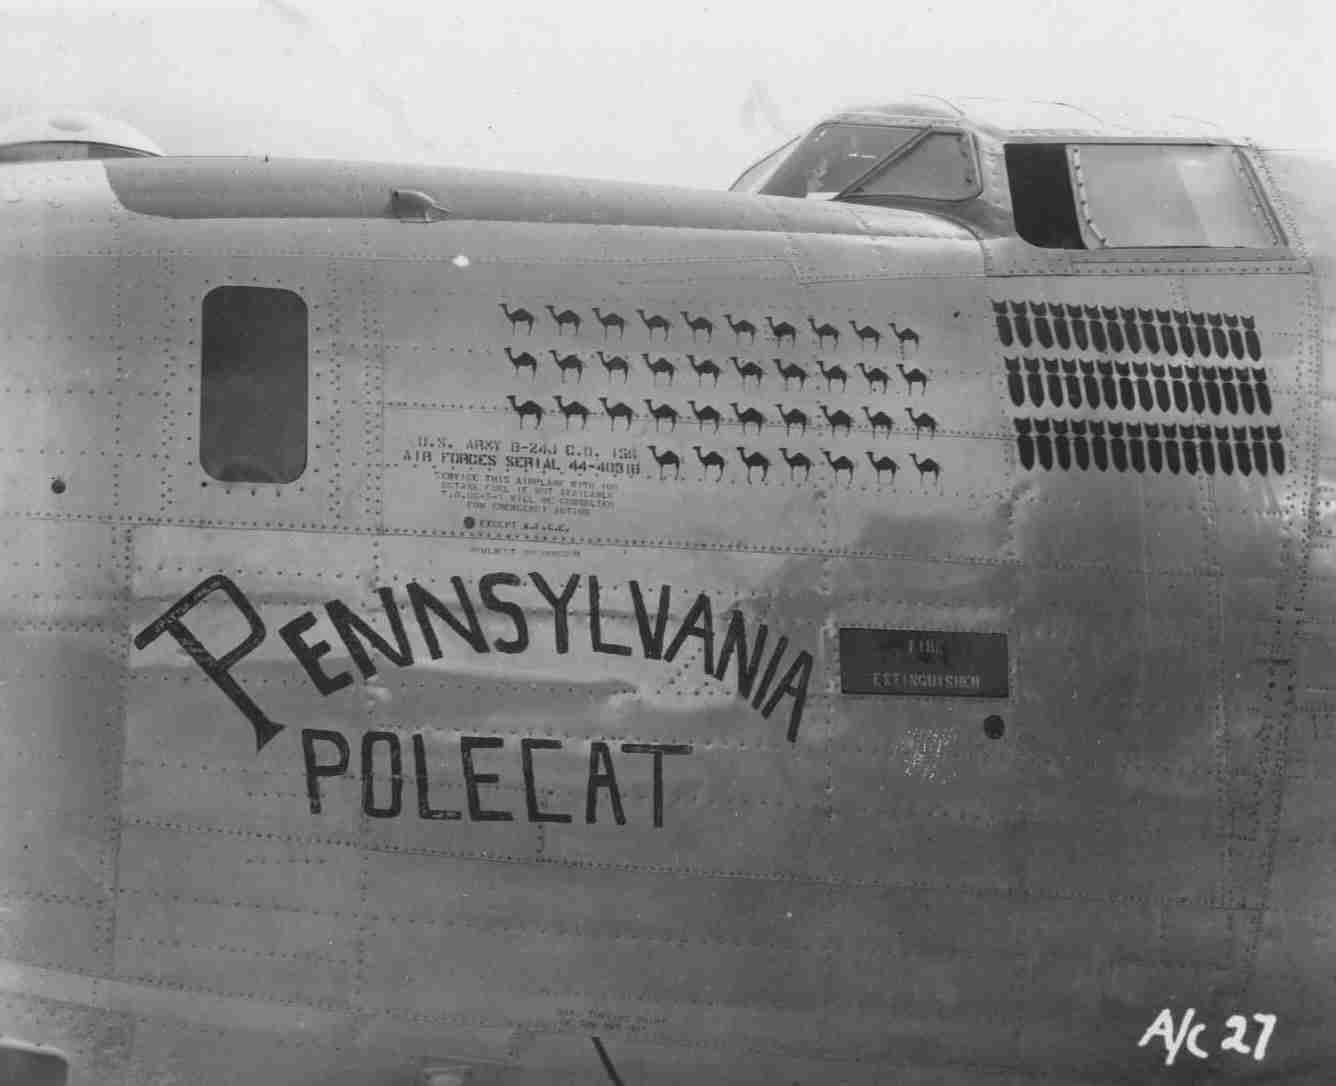 Pennsylvania Polecat